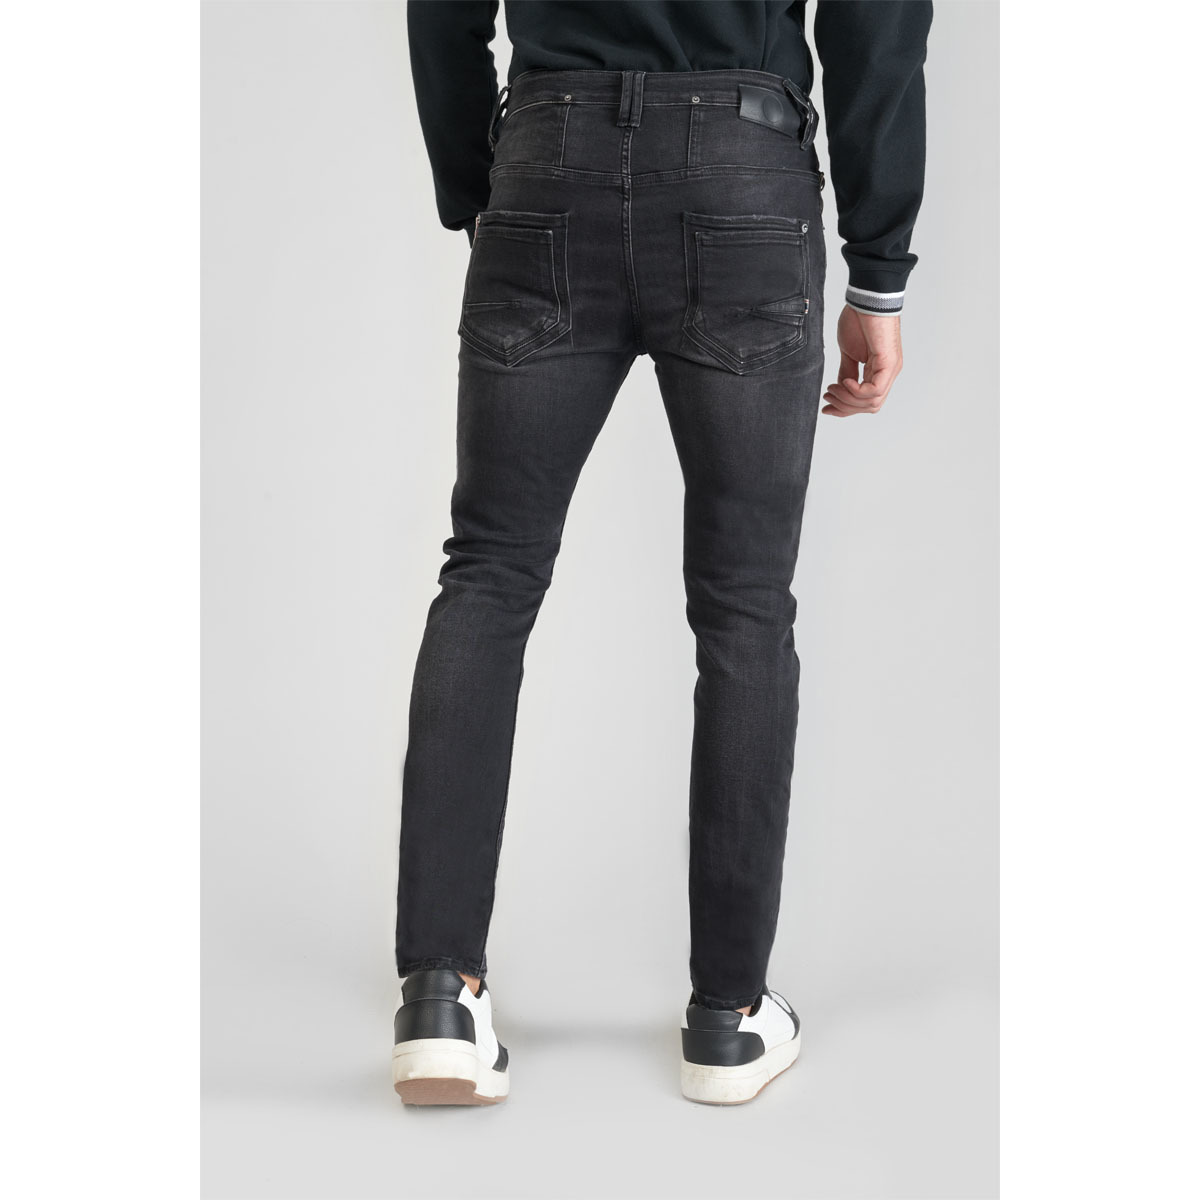 Le Temps des Cerises Noir Riff 900/16 tapered jeans destroy noir qfnEohcs